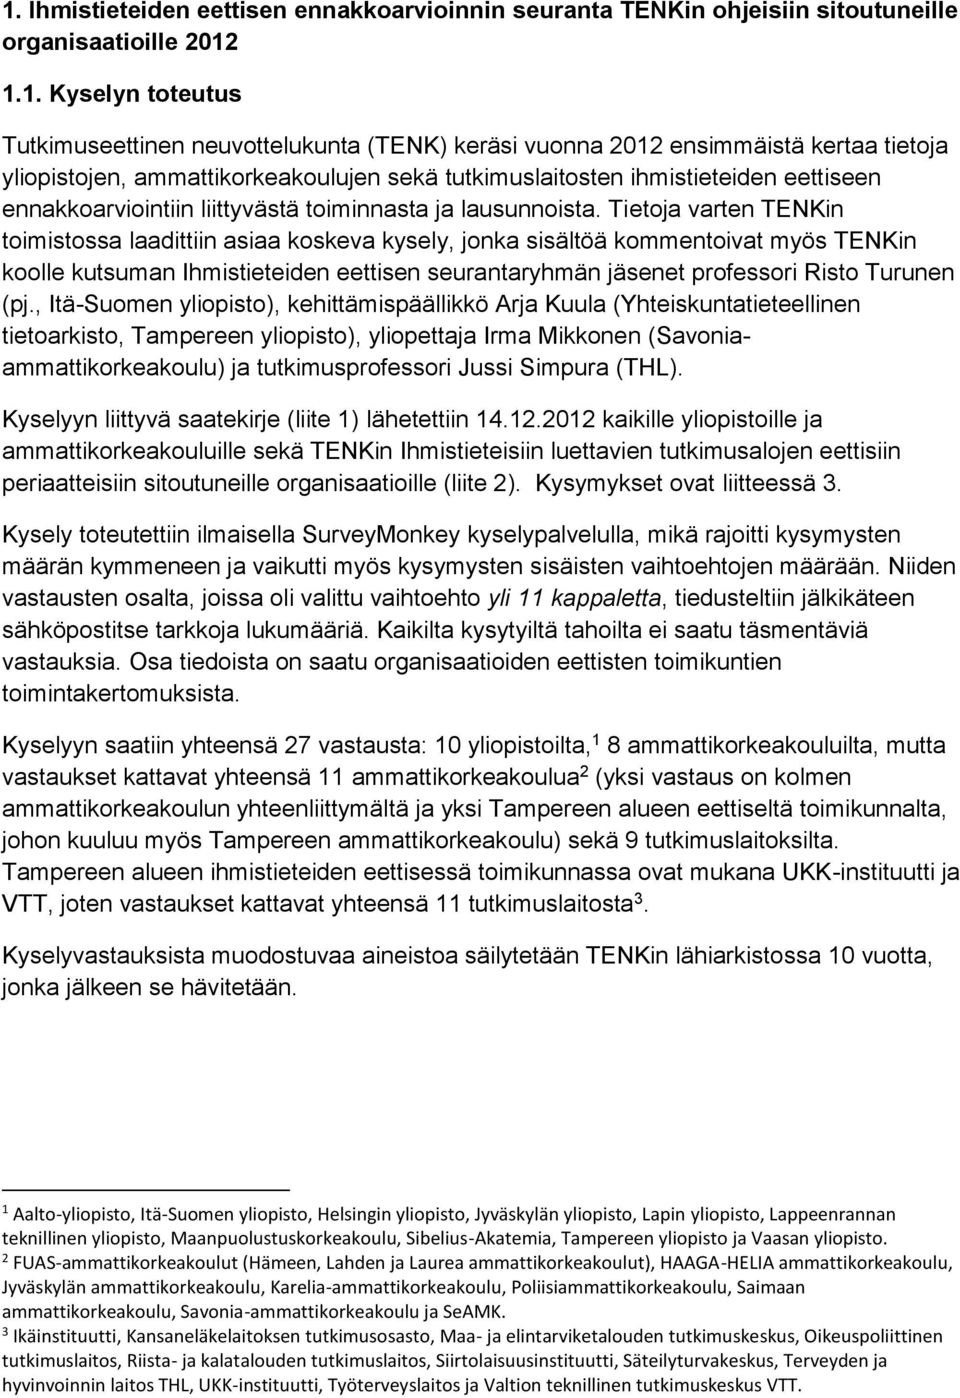 Tietoja varten TENKin toimistossa laadittiin asiaa koskeva kysely, jonka sisältöä kommentoivat myös TENKin koolle kutsuman Ihmistieteiden eettisen seurantaryhmän jäsenet professori Risto Turunen (pj.